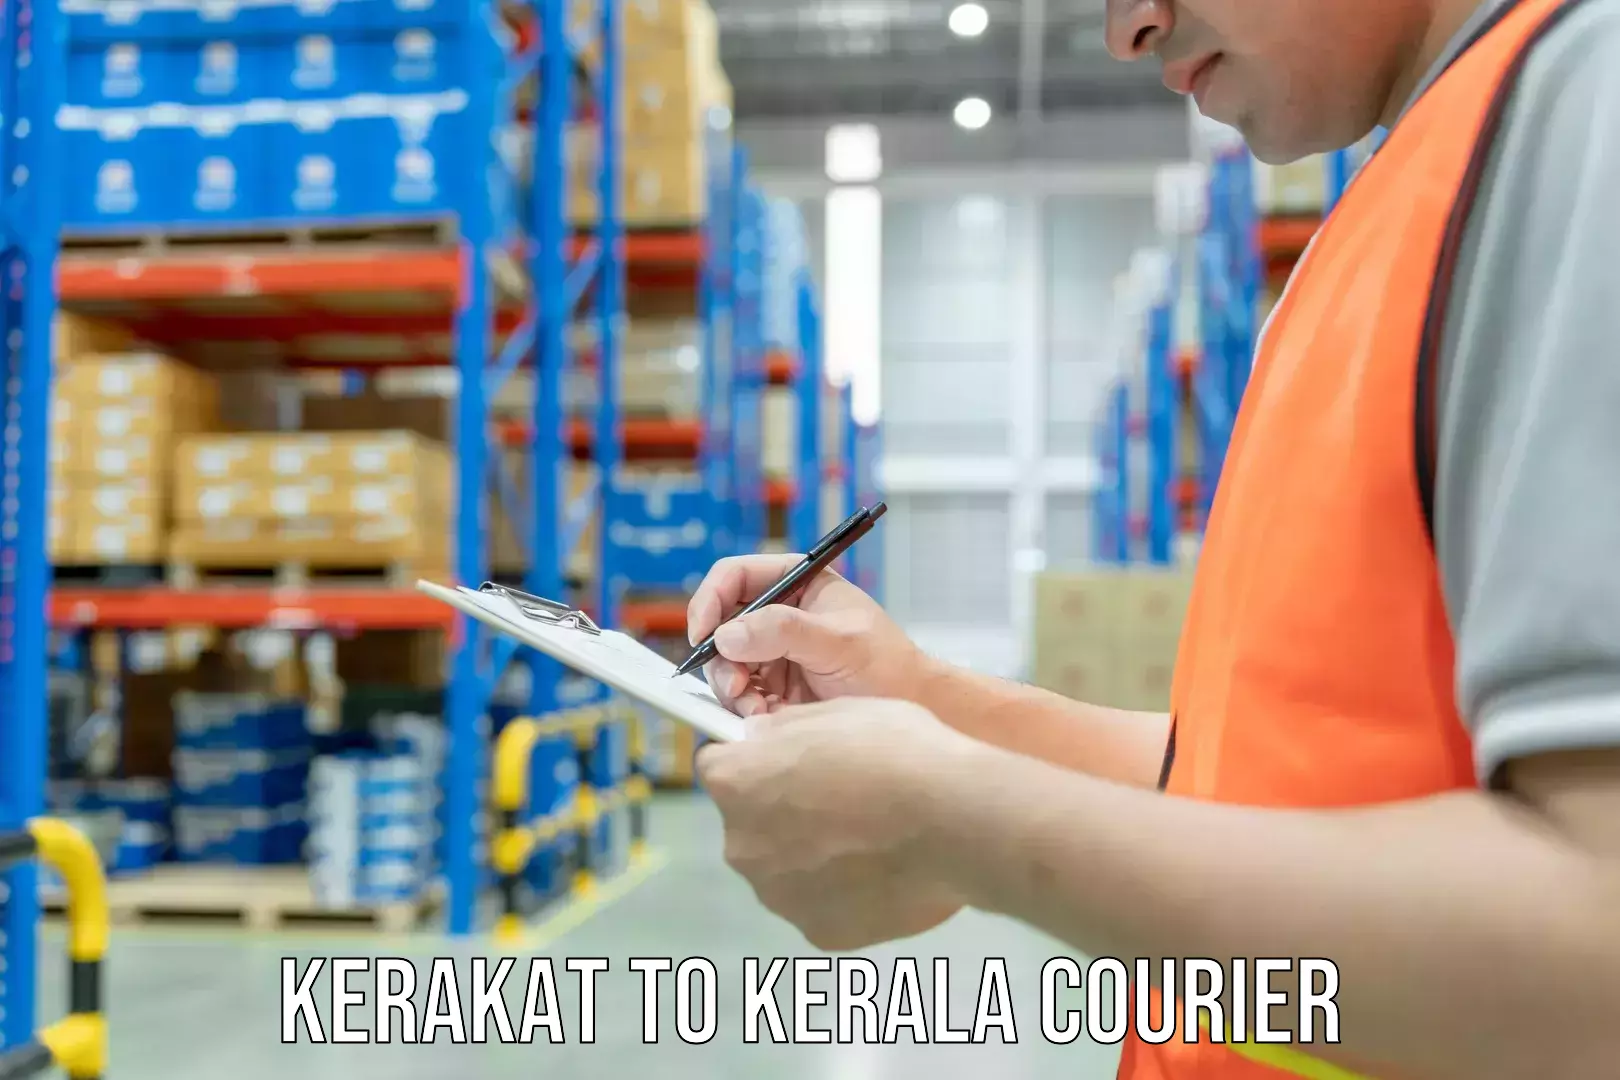 Furniture handling services Kerakat to Kerala